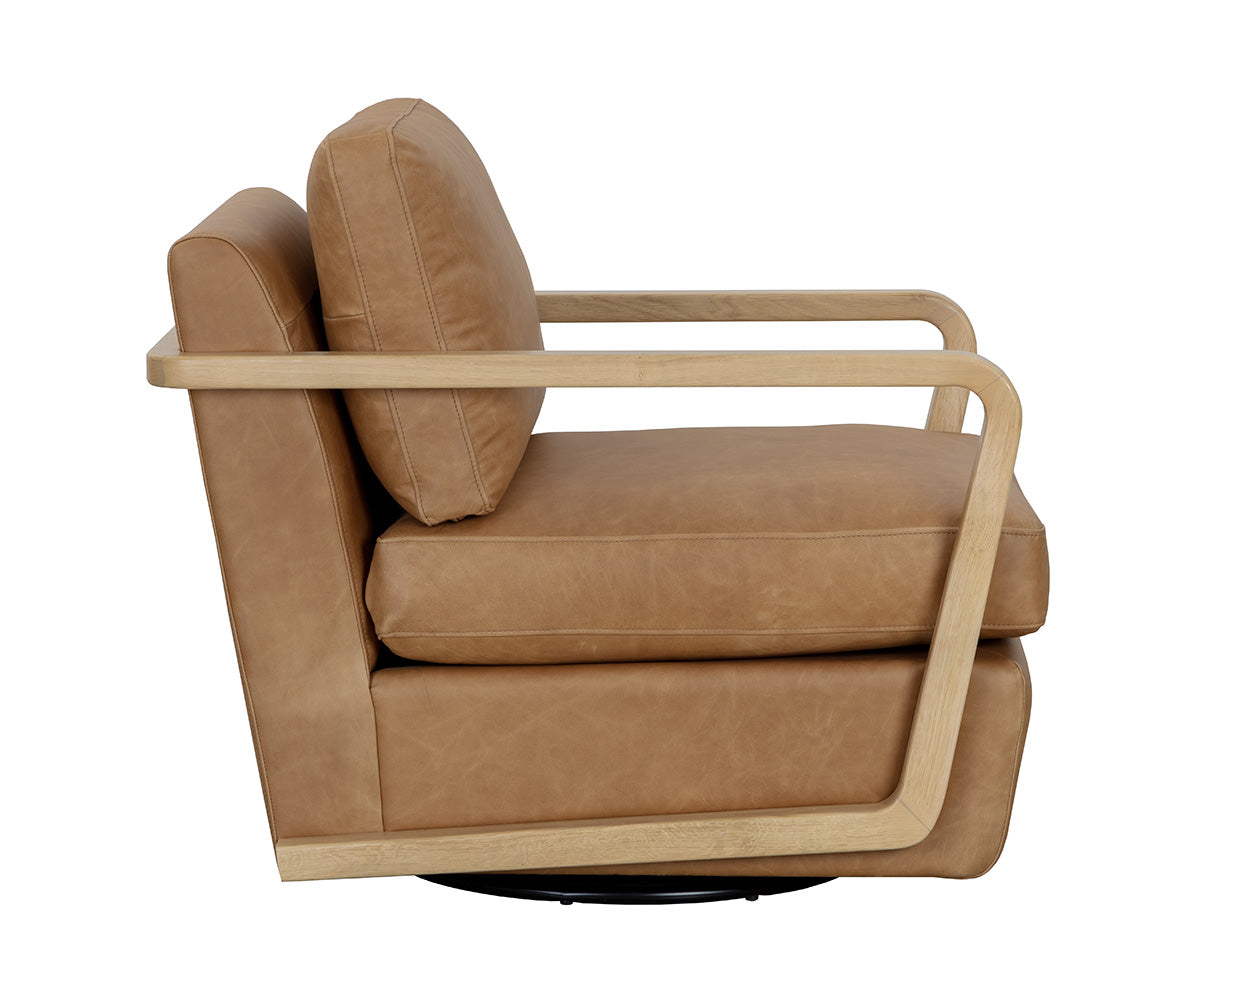 Castell Swivel Lounge Chair - Rustic Oak